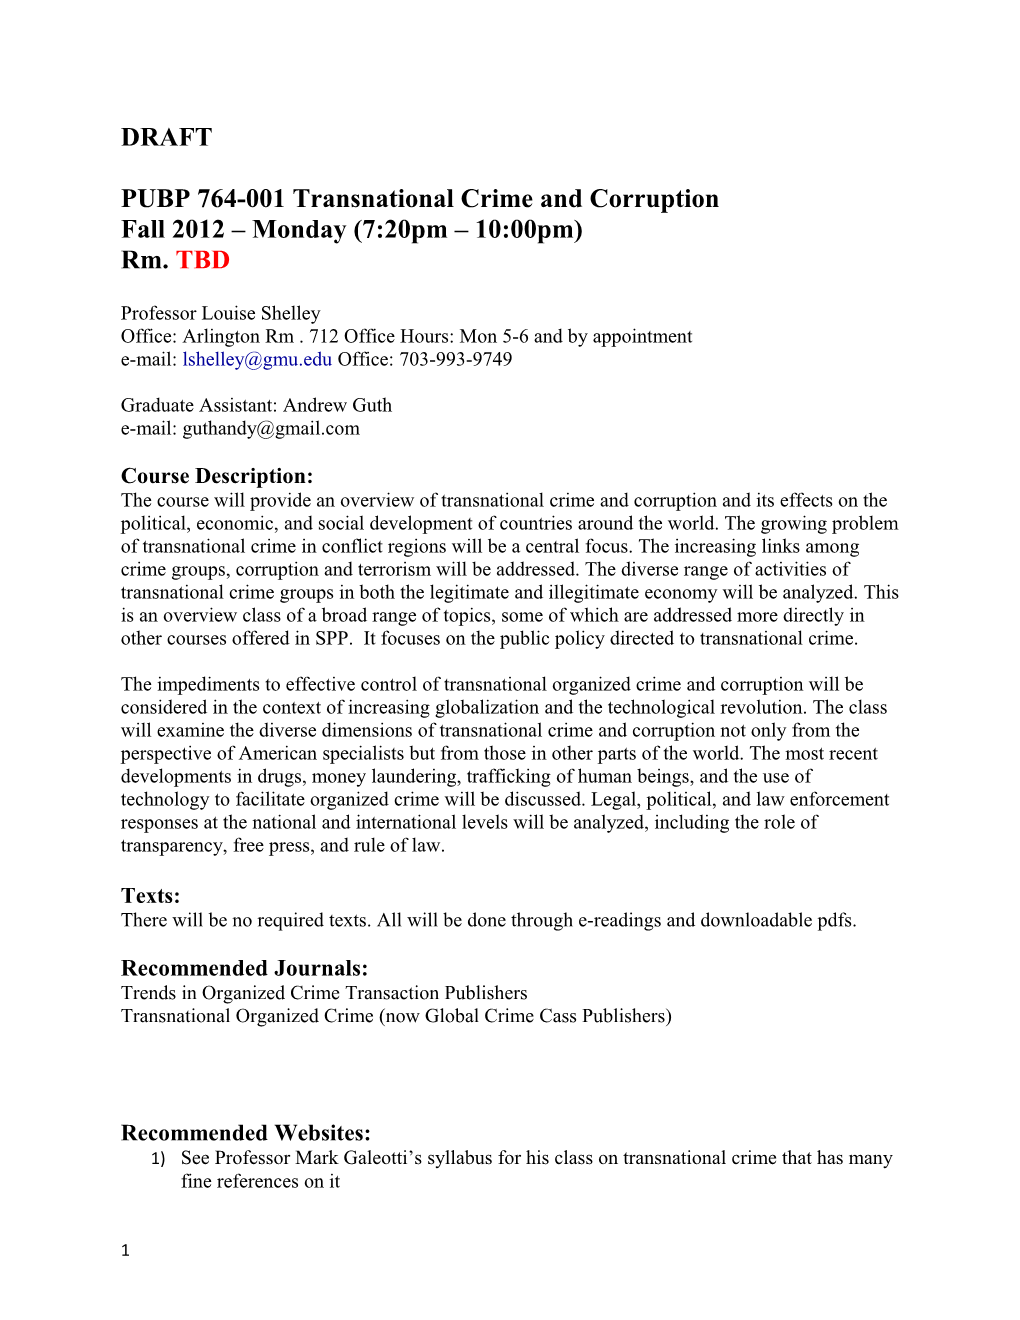 PUBP 764-001 Transnational Crime and Corruption